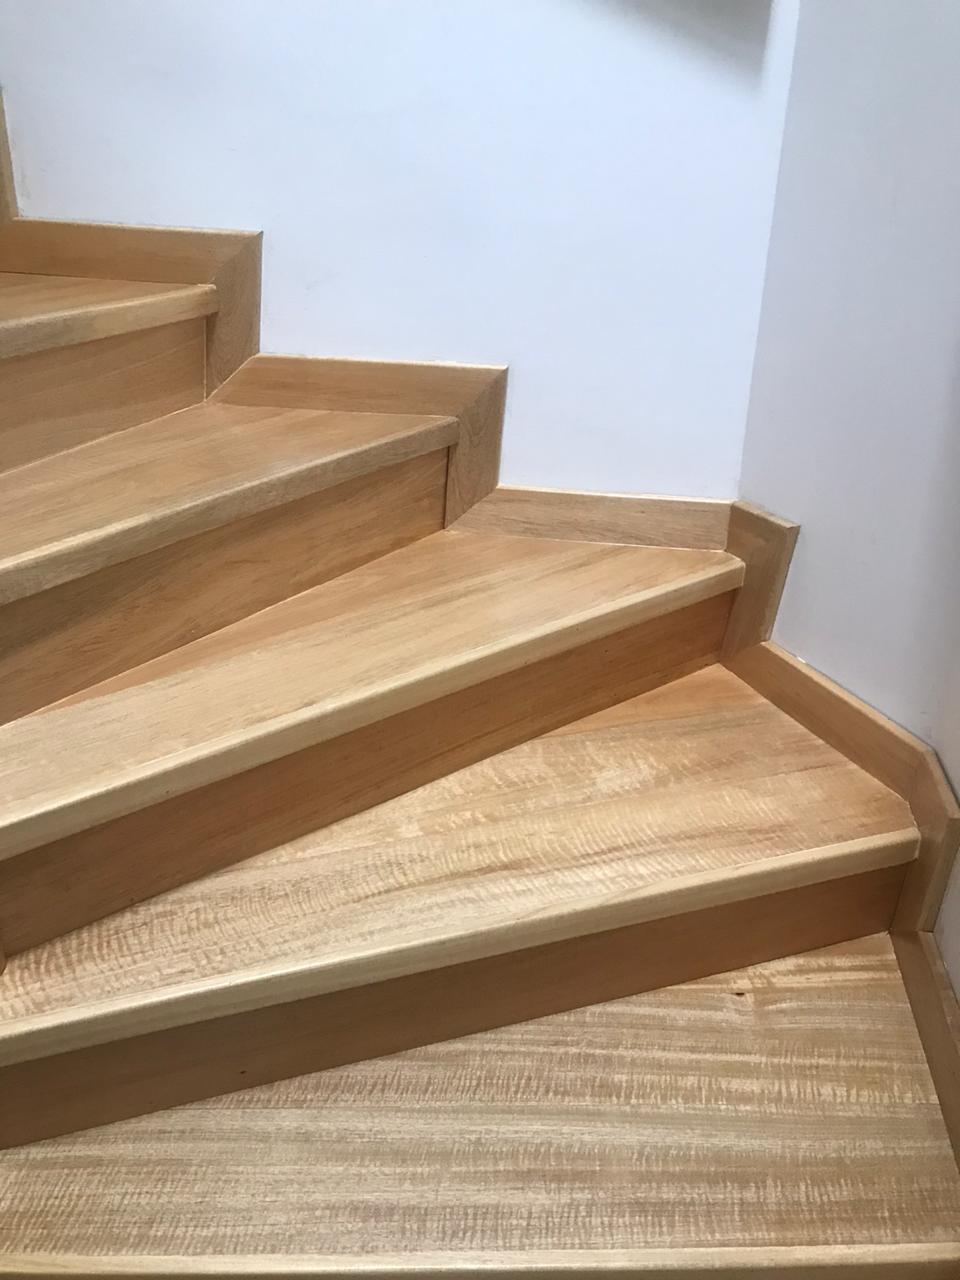 escaleras de madera sencillas